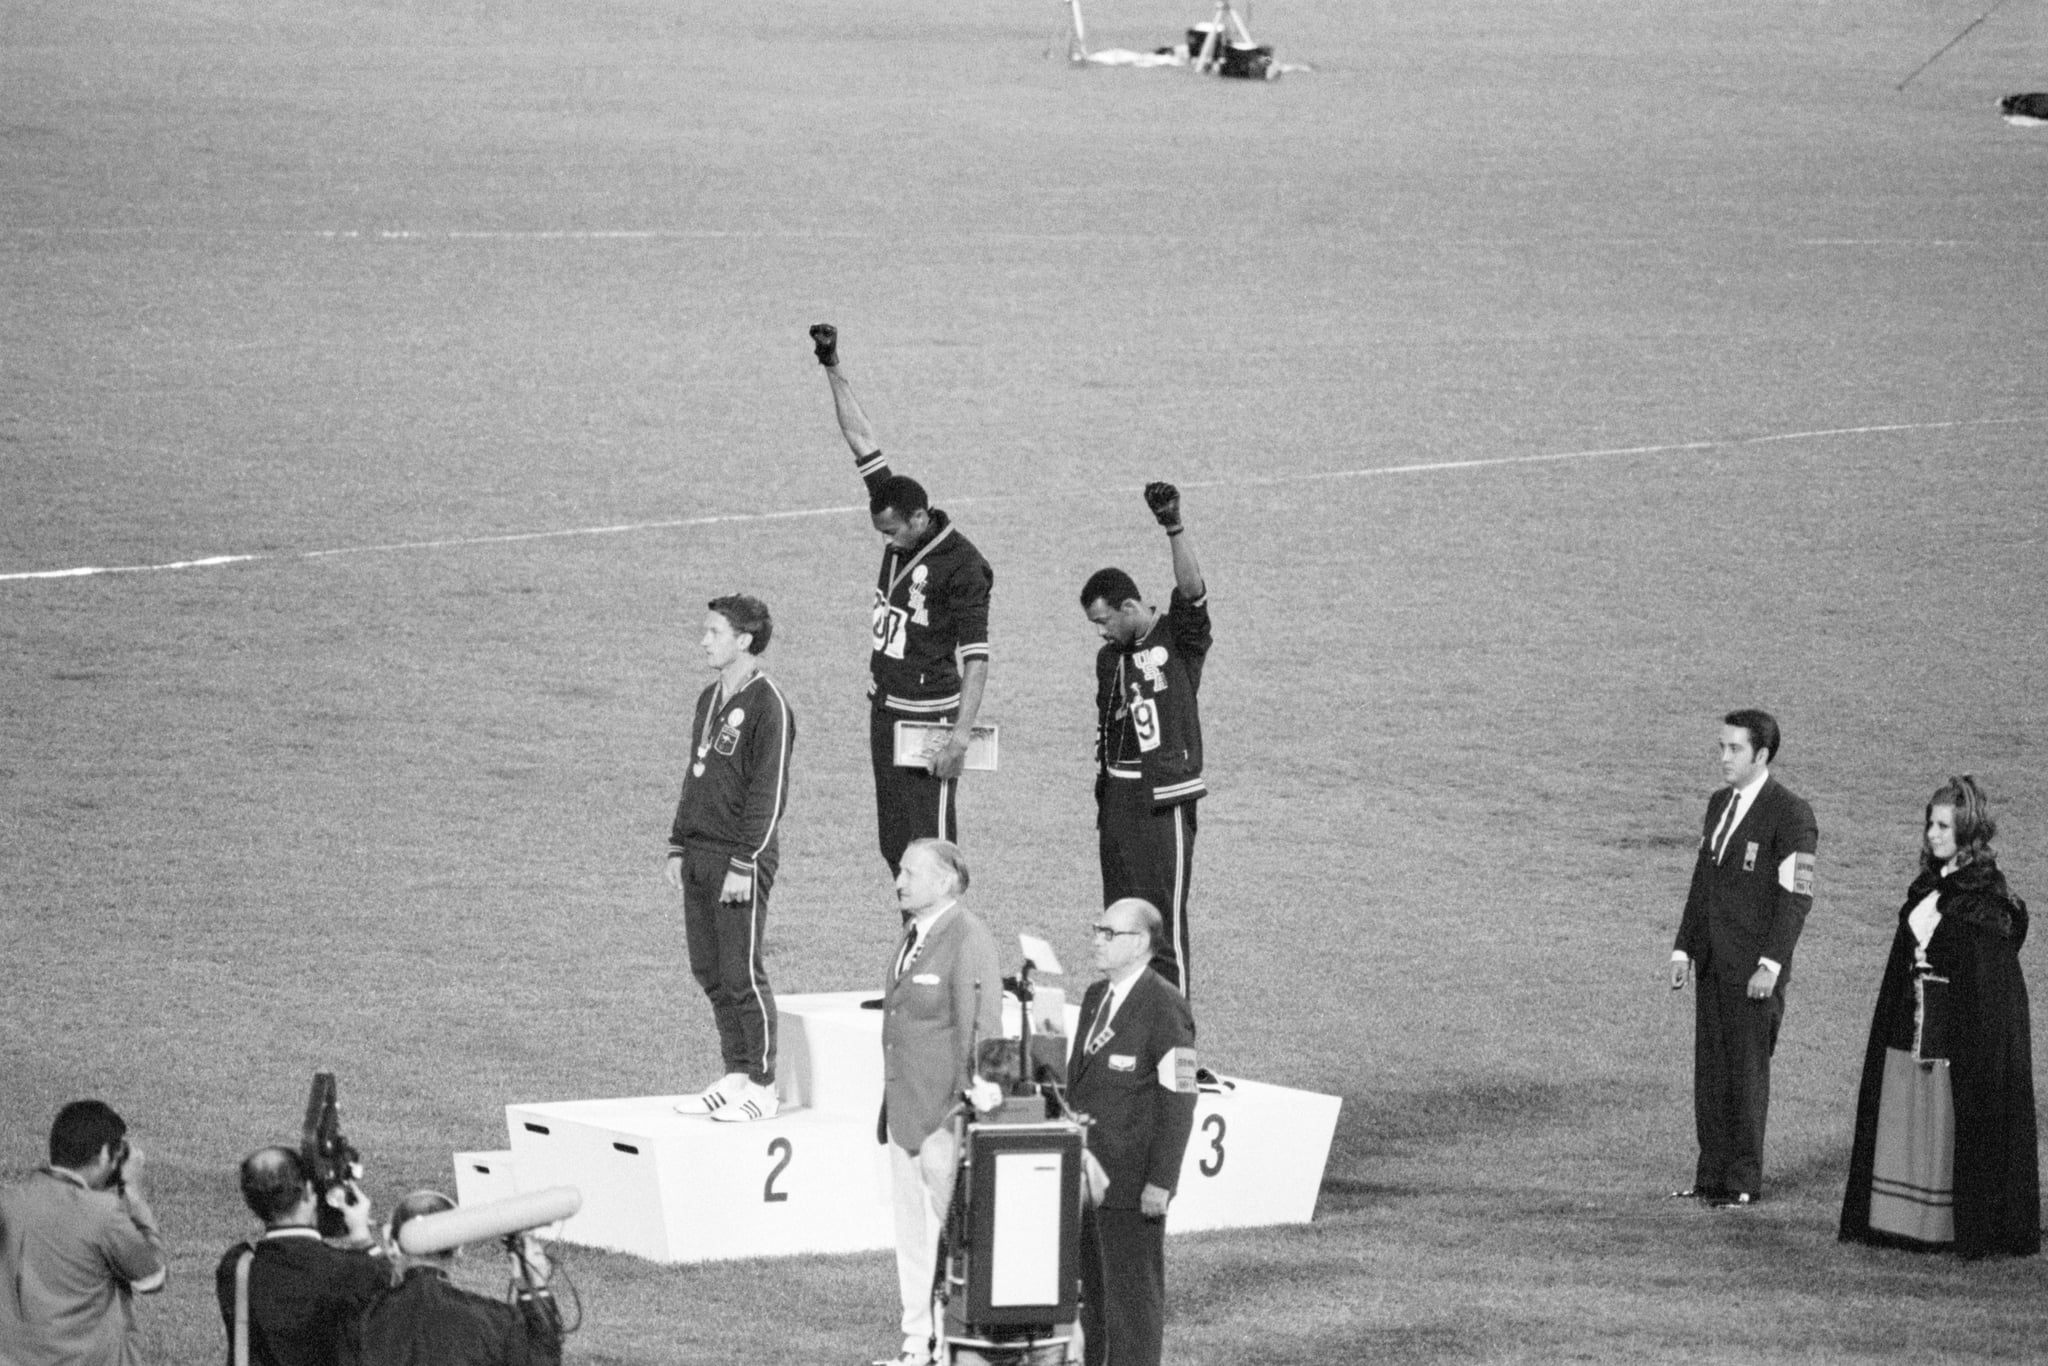 汤米·史密斯和约翰·卡洛斯,金牌和铜牌获得者在1968年奥运会200米跑,参与一场胜利站抗议不公平待遇的黑人在美国。低下头,black-gloved拳头长大的黑人权力致敬,他们拒绝承认美国国旗和国歌。澳大利亚的彼得·诺曼是银牌获得者。